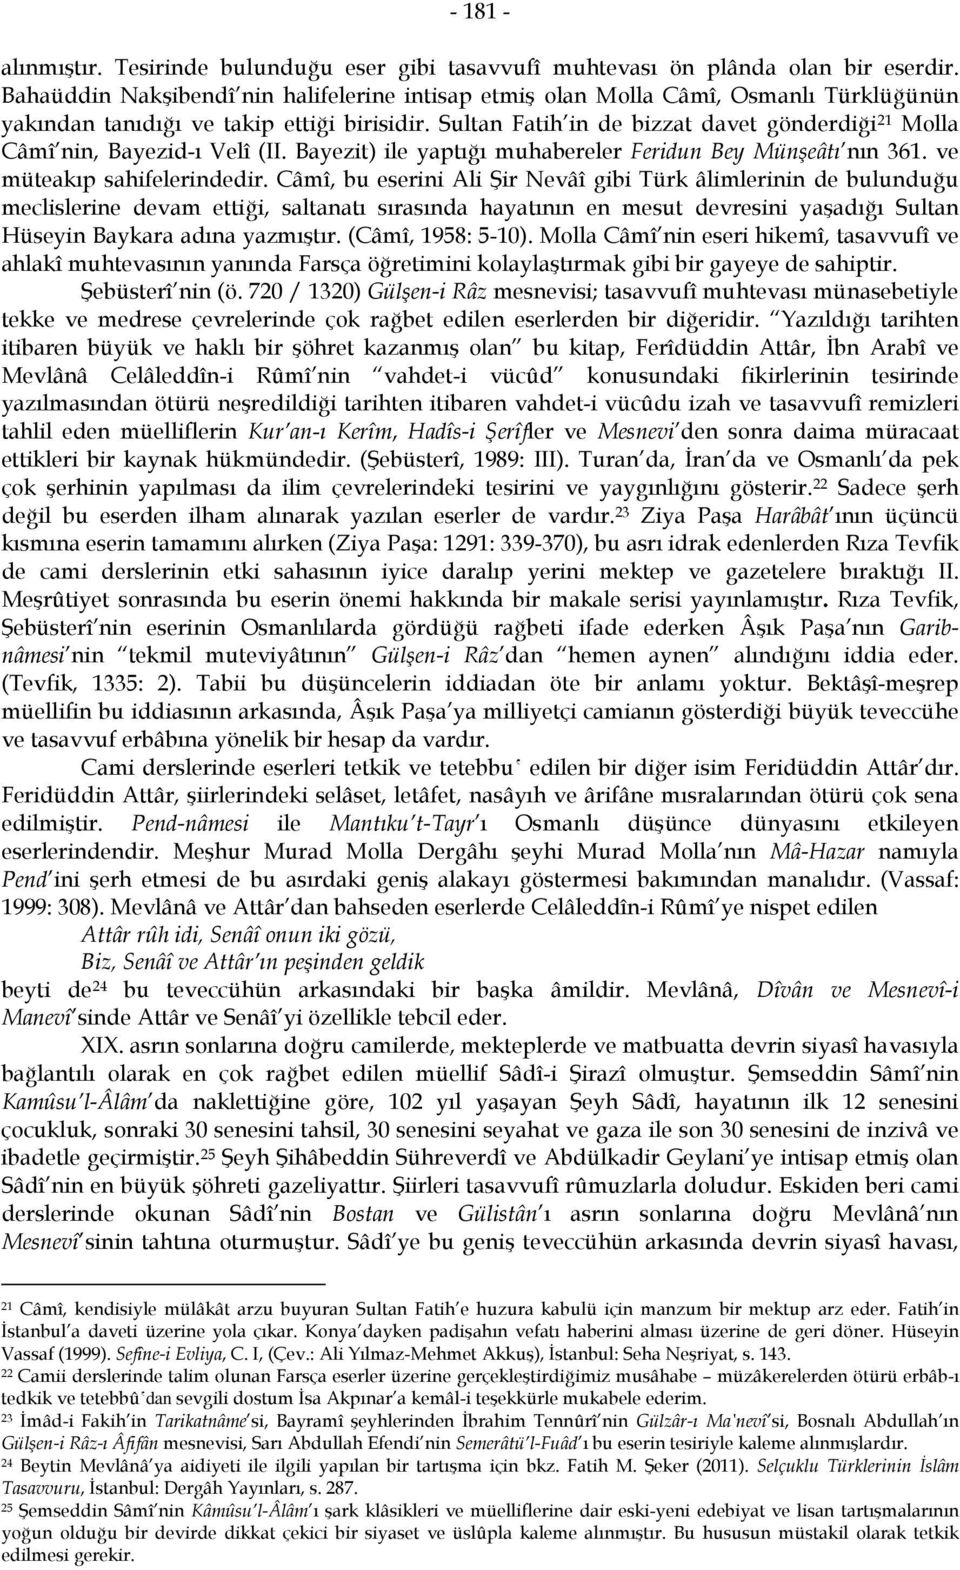 Sultan Fatih in de bizzat davet gönderdiği 21 Molla Câmî nin, Bayezid-ı Velî (II. Bayezit) ile yaptığı muhabereler Feridun Bey Münşeâtı nın 361. ve müteakıp sahifelerindedir.